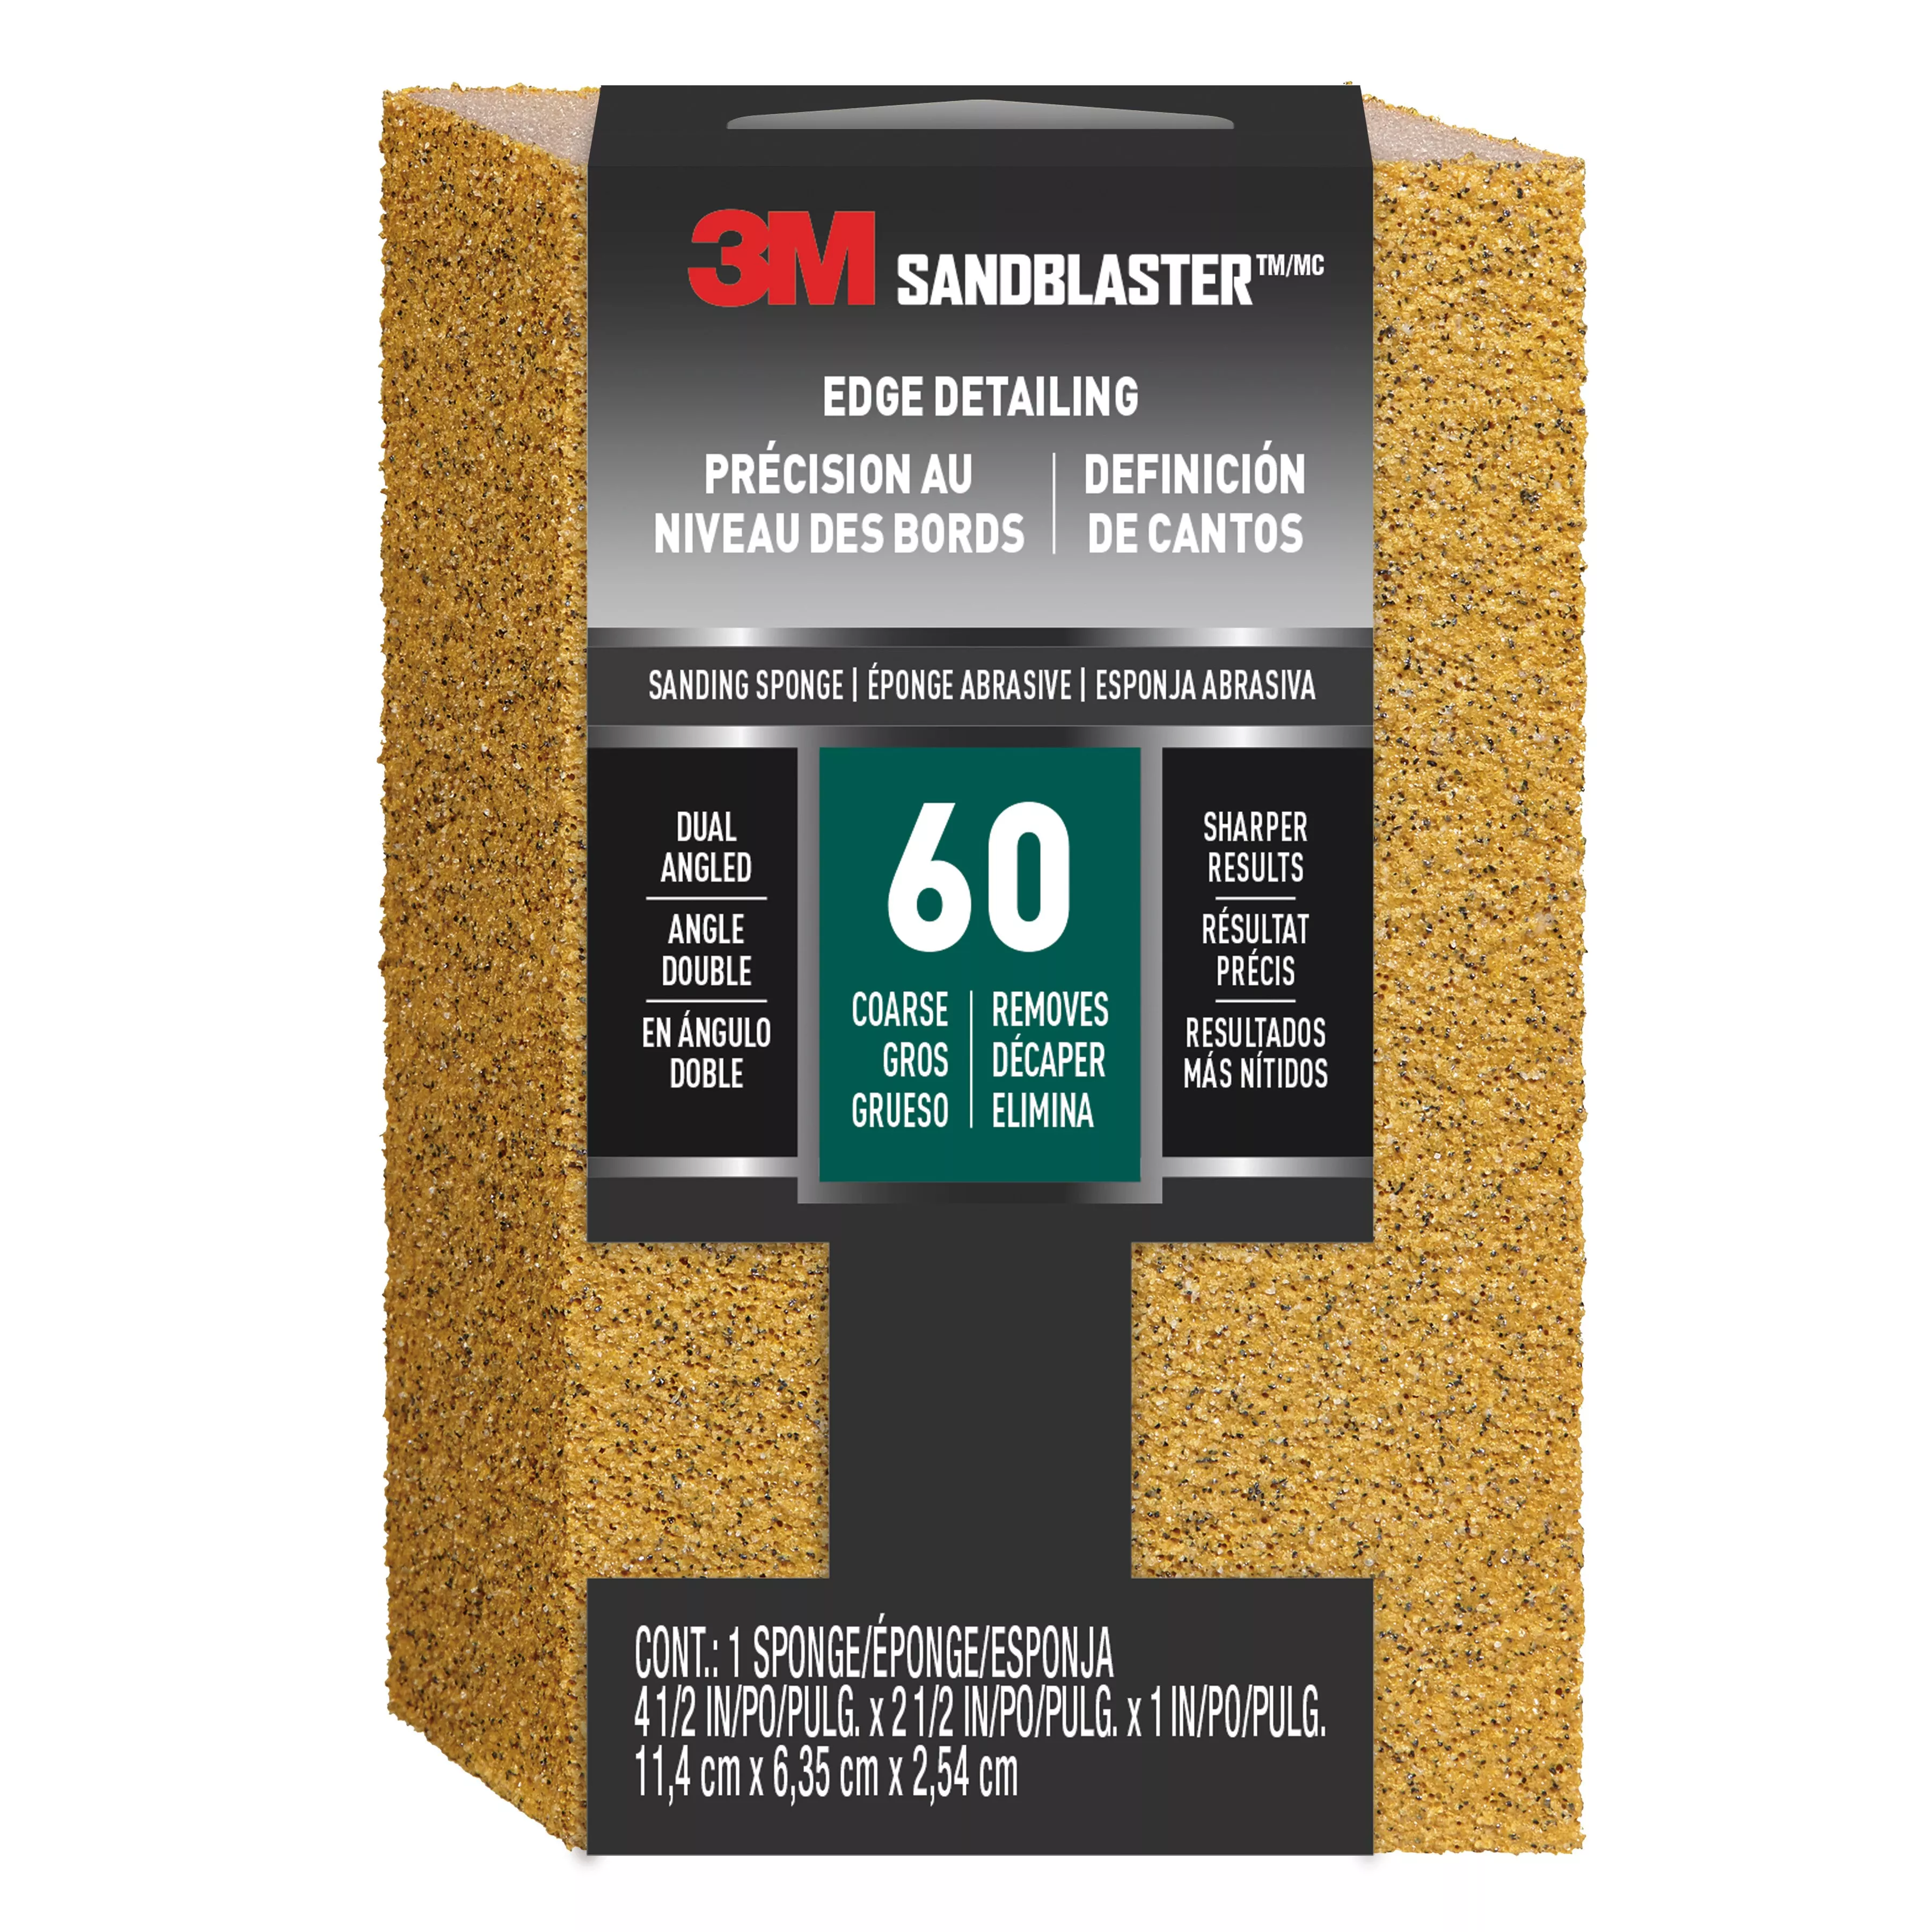 3M™ SandBlaster™ Edge Detailing Sanding Sponge 9558, 60 grit, 4 1/2 in x 2 1/2 x 1 in, 1/pk